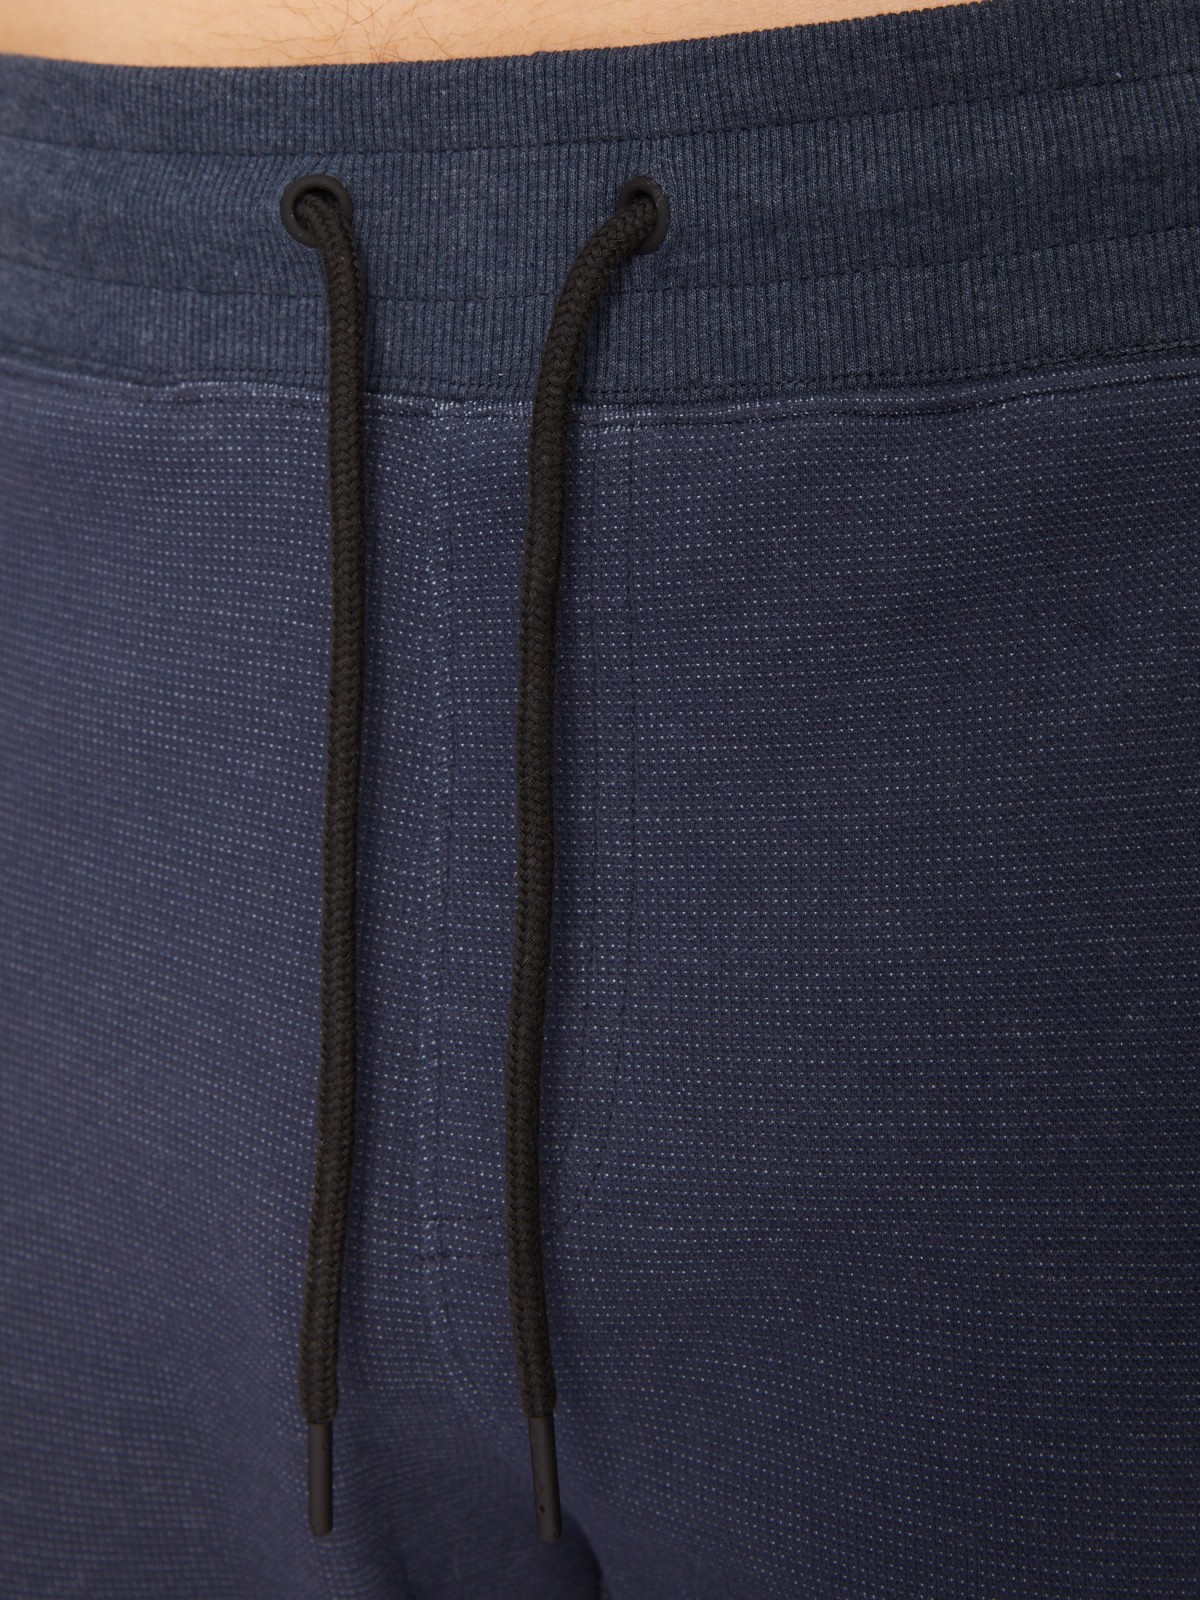 Трикотажные брюки-джоггеры в спортивном стиле zolla 213317679023, цвет синий, размер S - фото 4